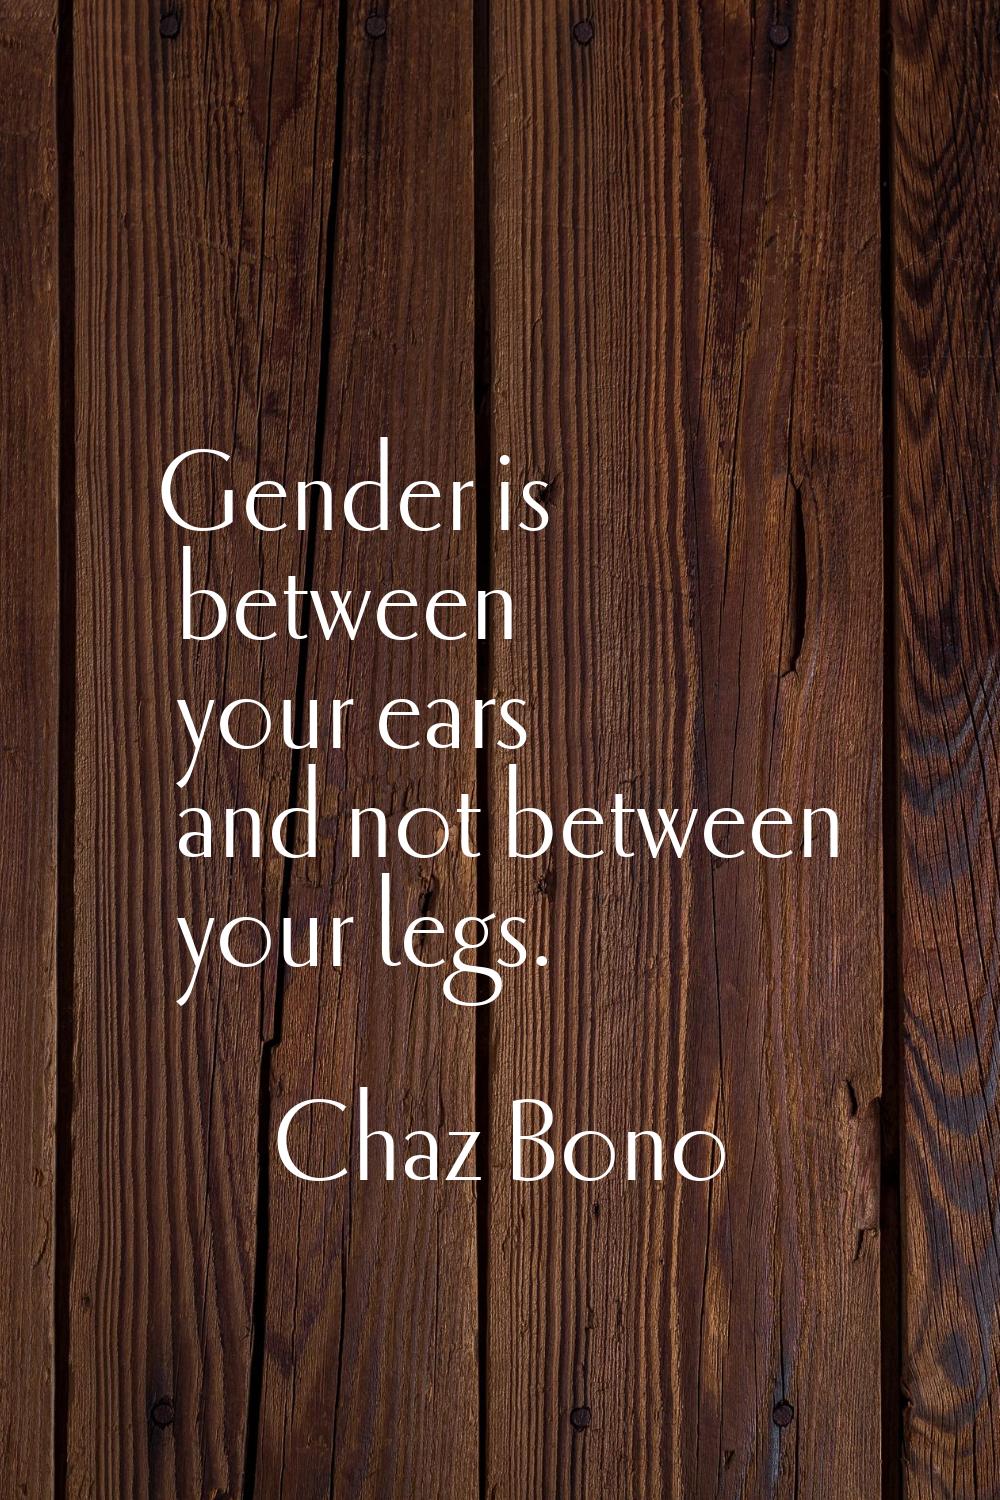 Gender is between your ears and not between your legs.